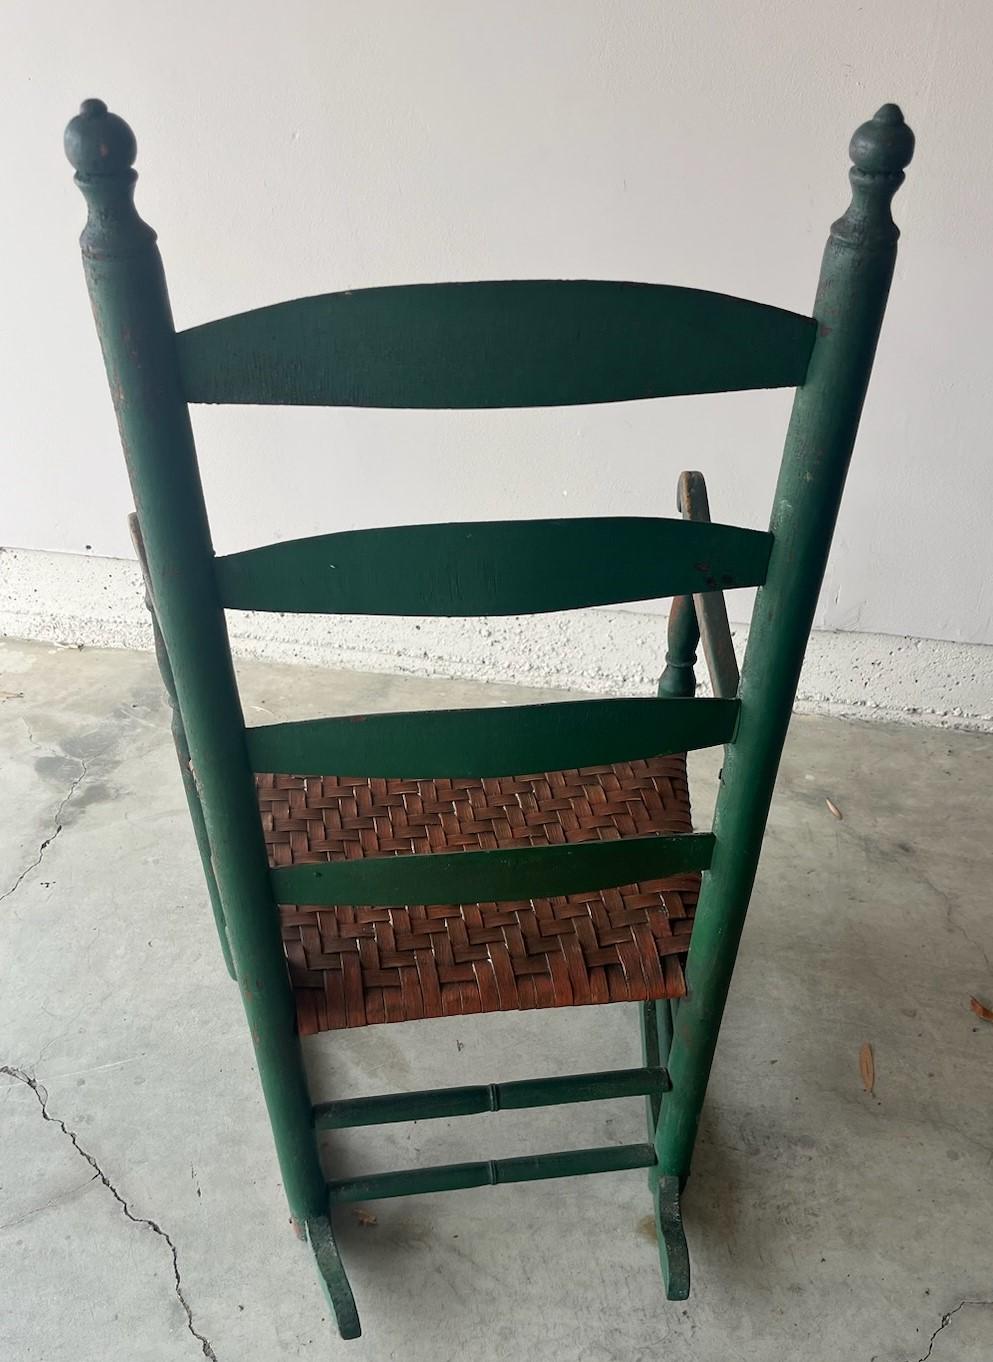 19ème Chaise à bascule originale à dossier en échelle vert pomme avec un siège en jonc tissé à la main dans une peinture saumon. Cette chaise à bascule du début de la Nouvelle-Angleterre est en très bon état et très robuste.
La surface peinte est